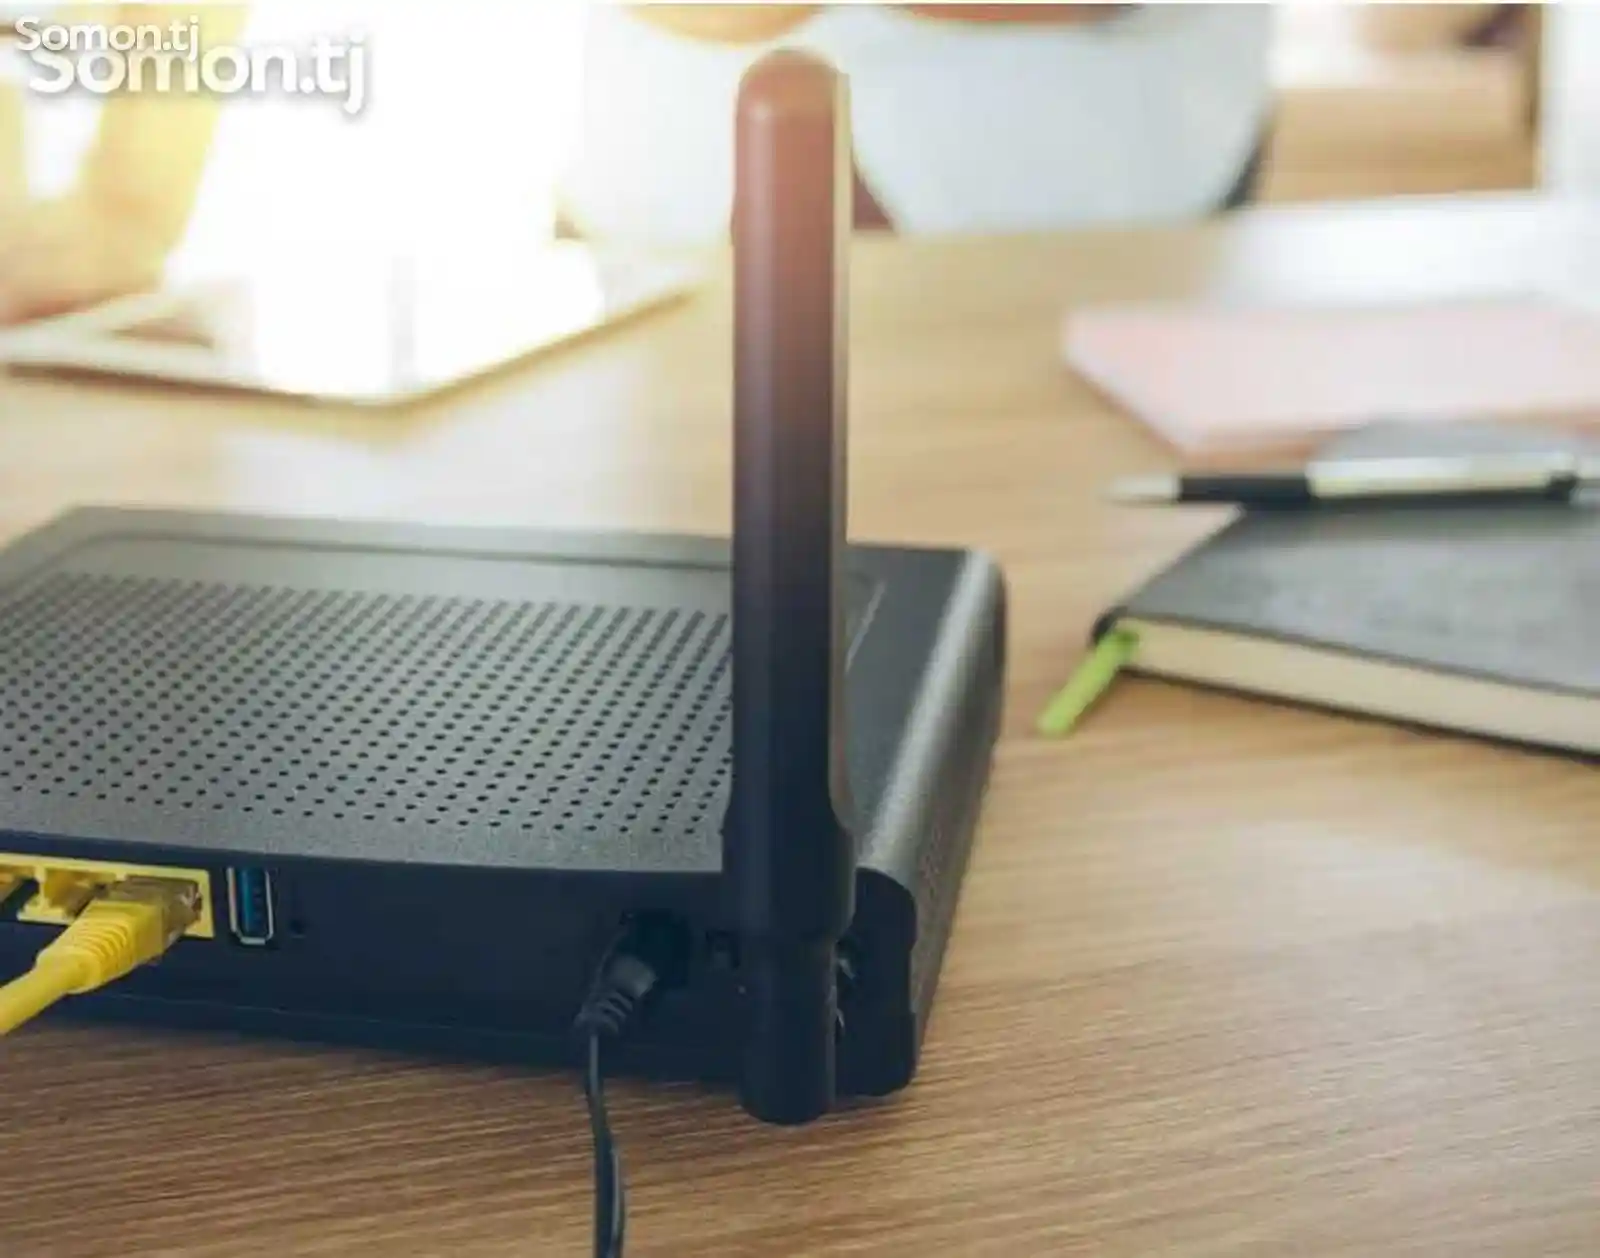 Спрятать кабель, настройка Wi-Fi роутер Подключаем YouTube к Smart TV-2